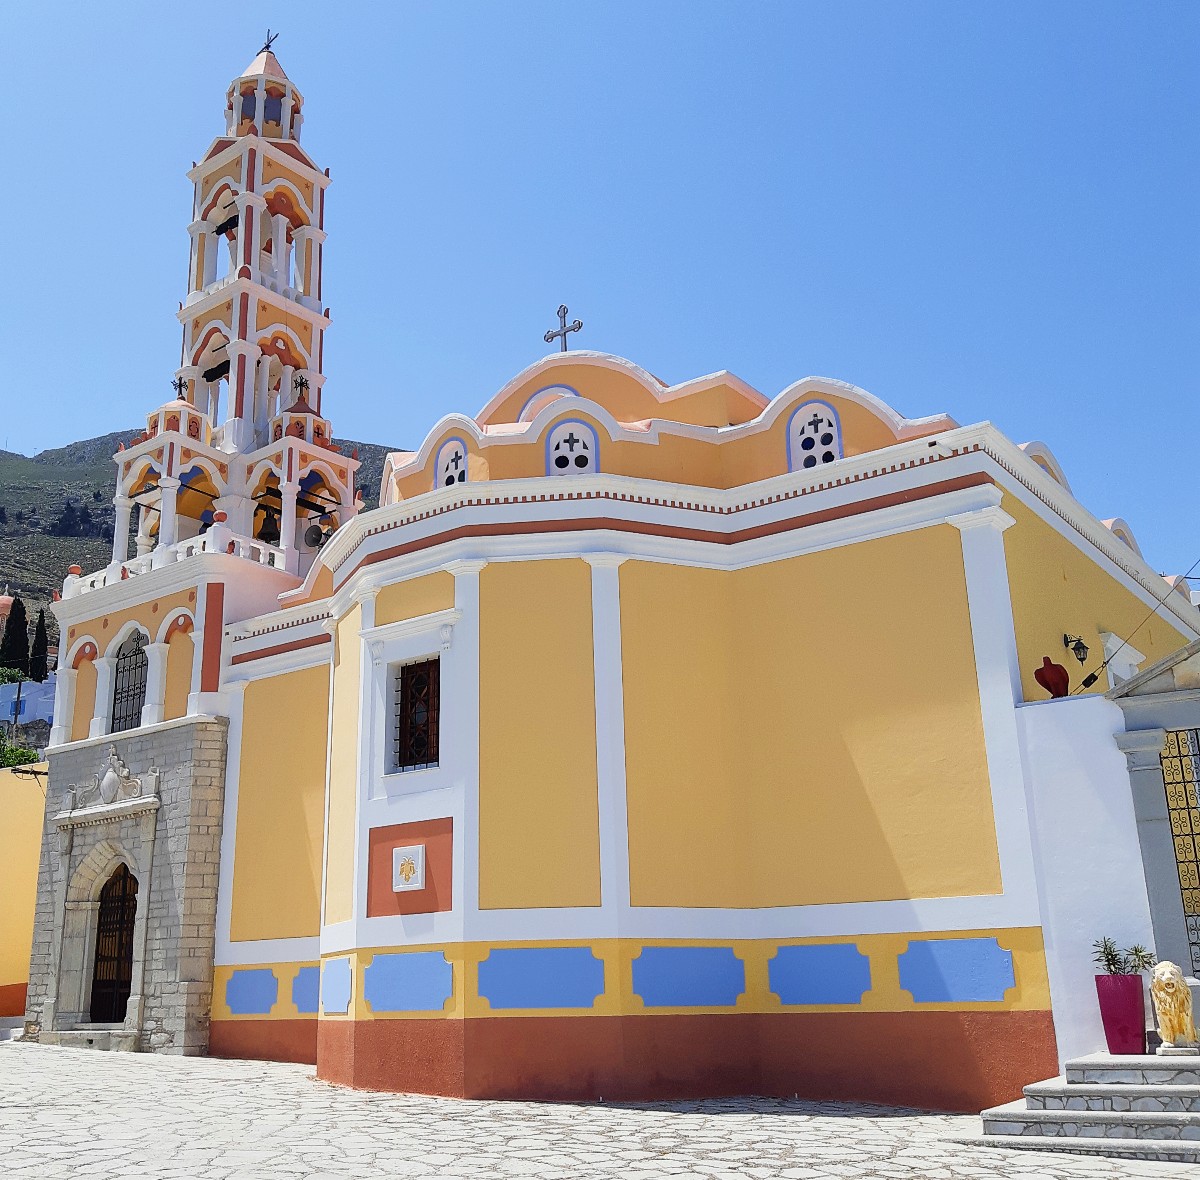 A church in Symi island Greece